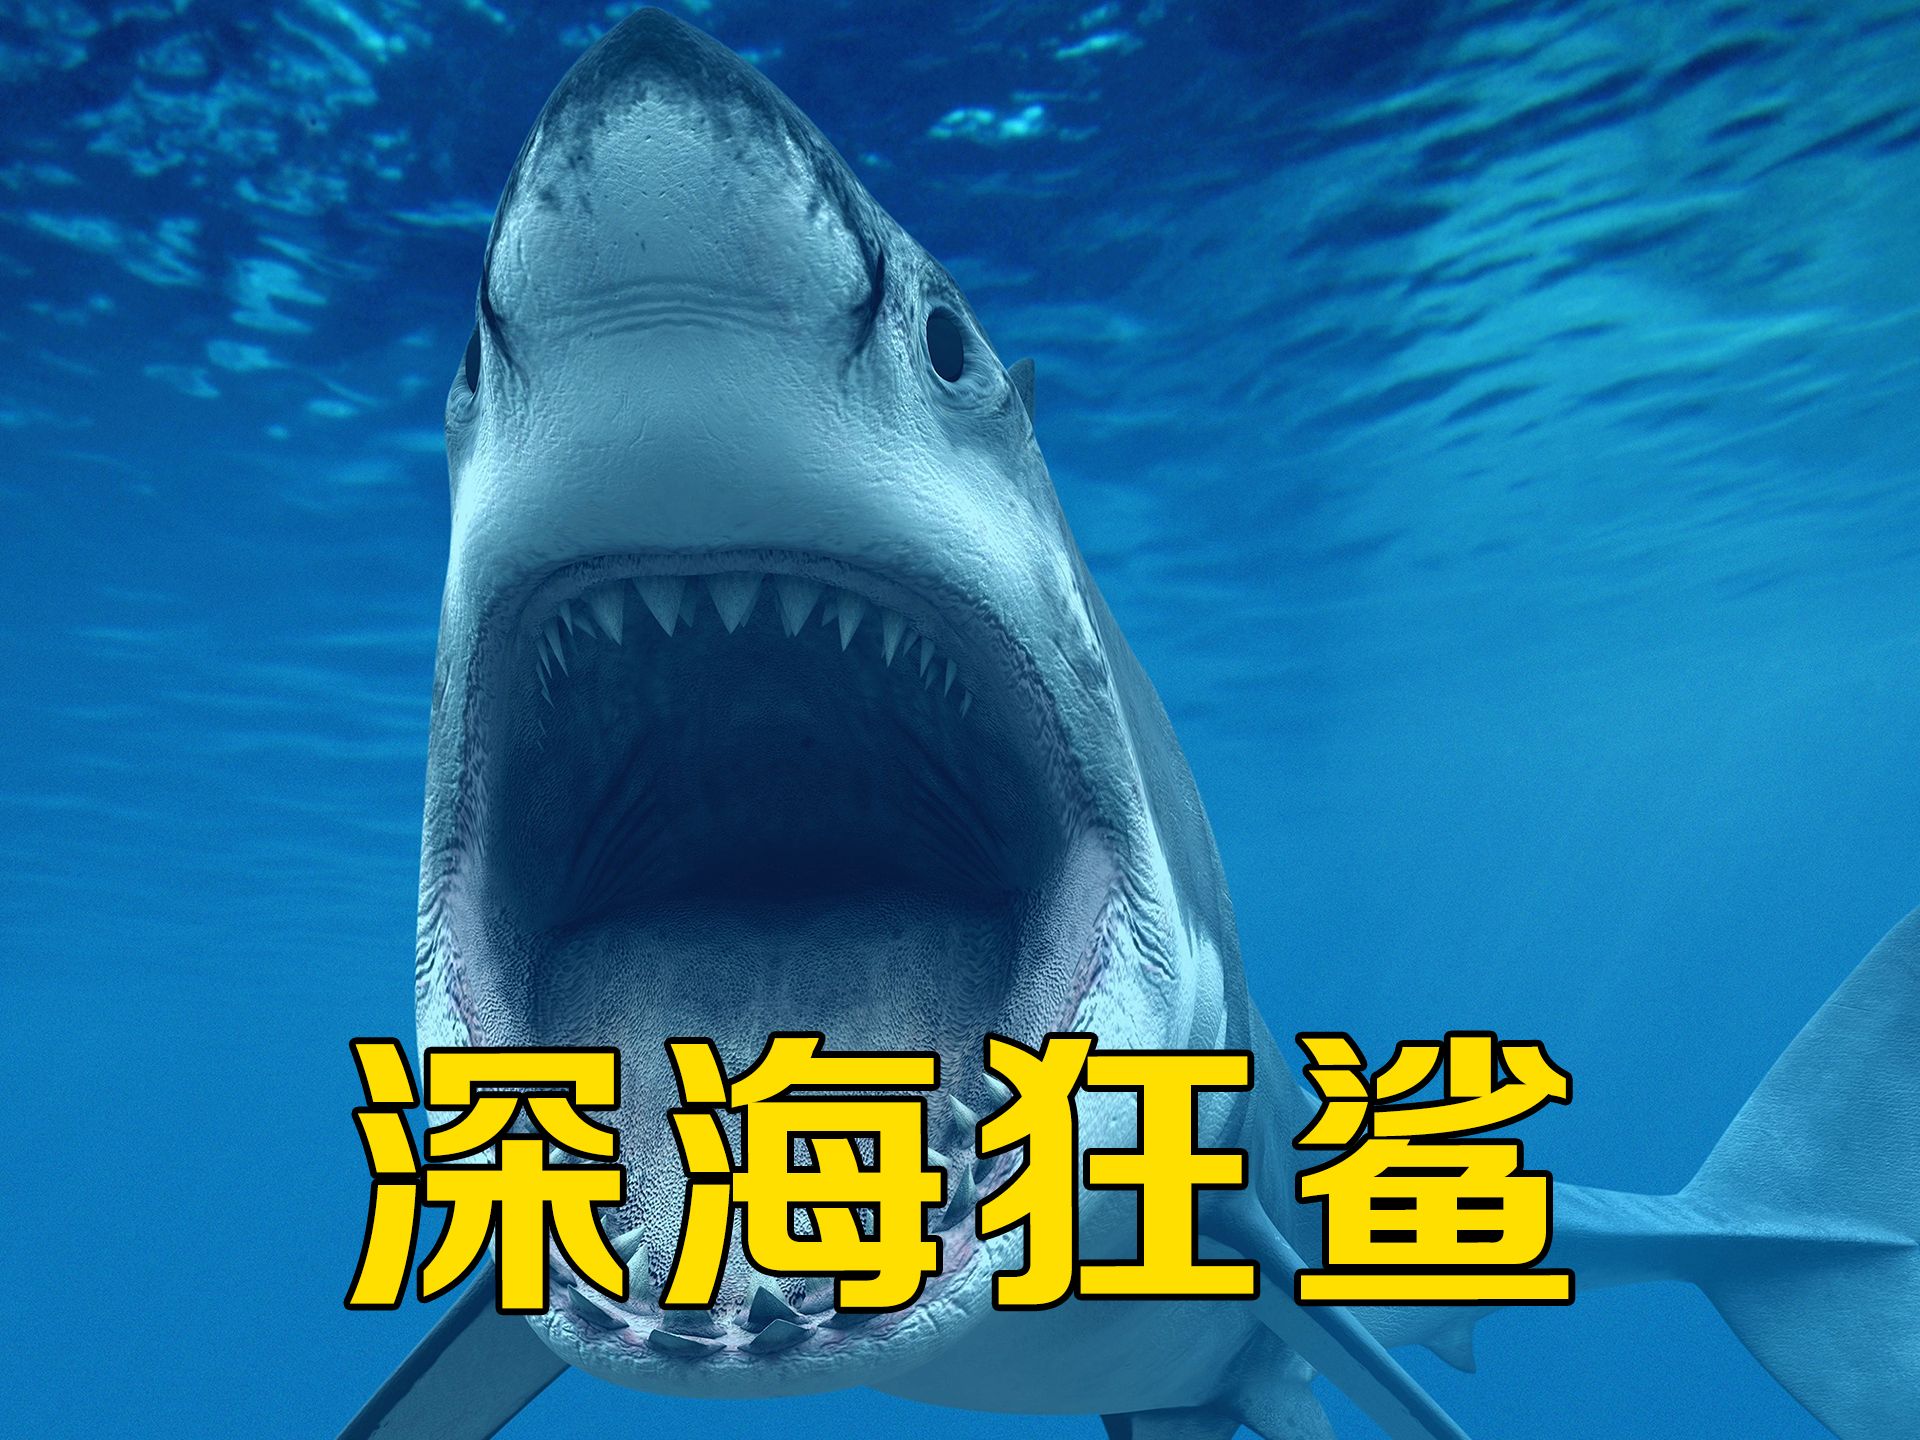 科学家为攻克老年痴呆,培育出三头巨型鲨鱼,美国惊悚电影《深海狂鲨》